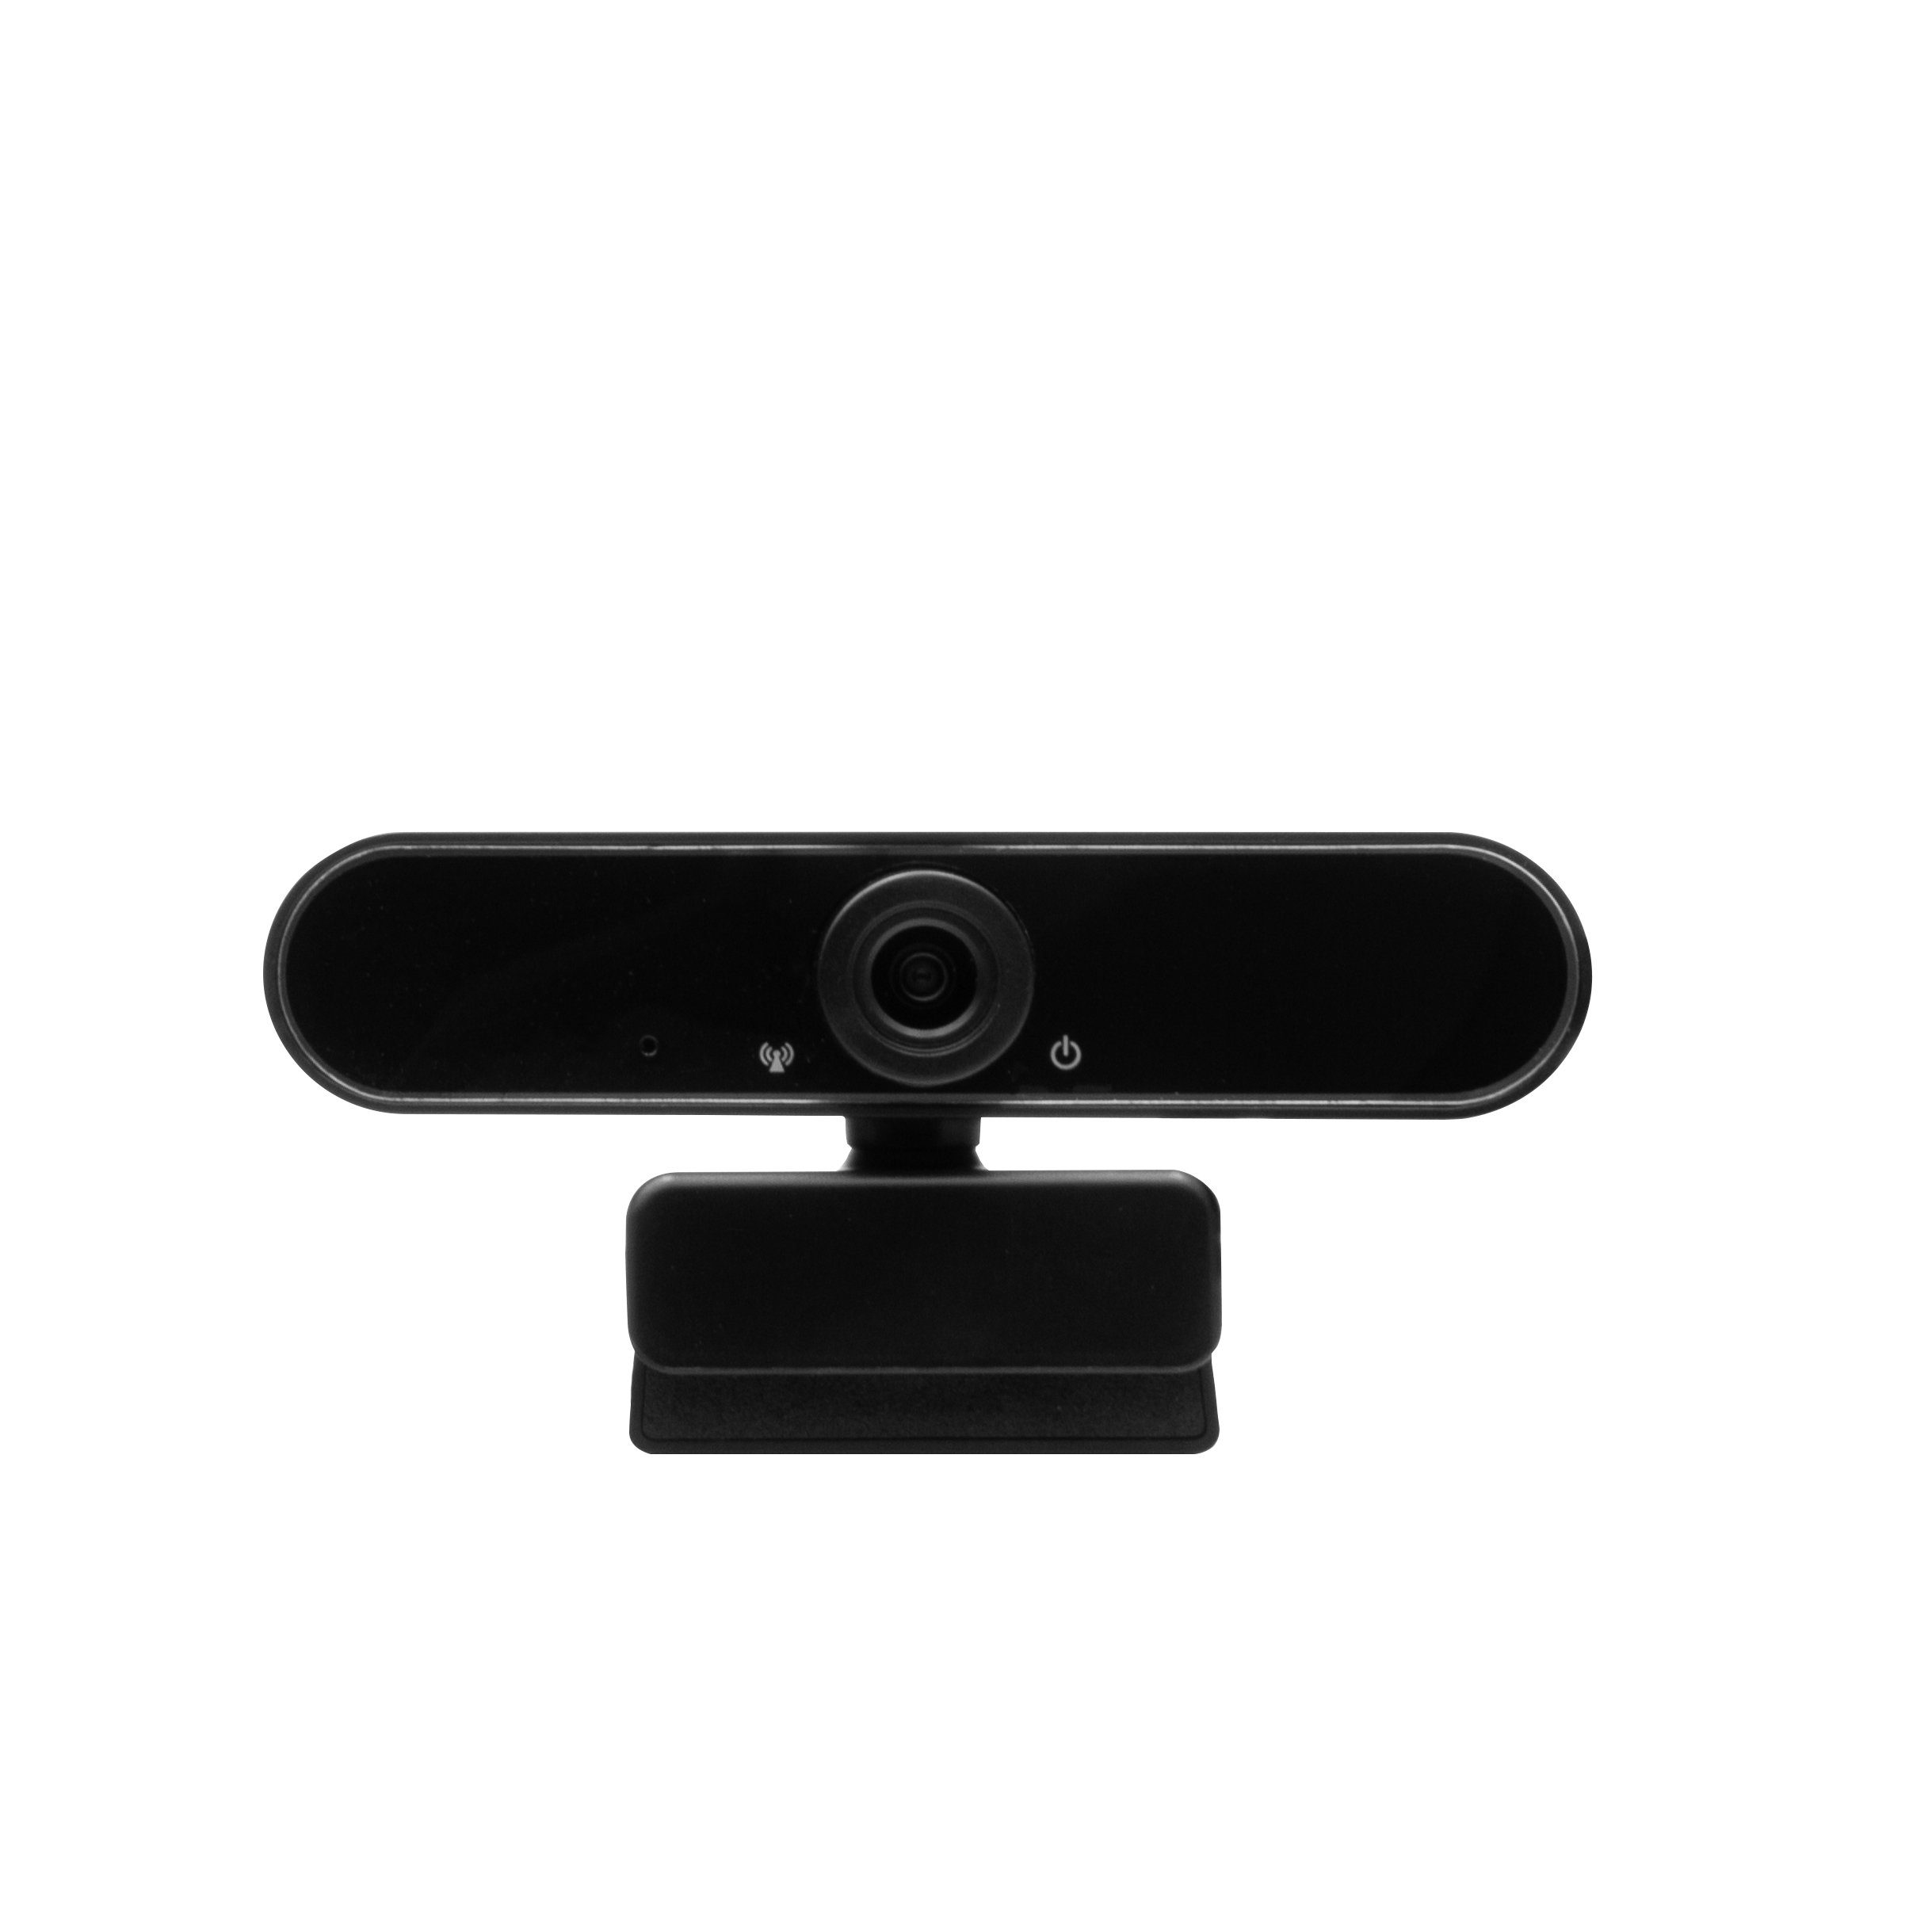 Hyrican Striker Streamer ST-GH530 Studio Startup Mikrofon + + ST-SM50 schwarz + + USB, DW1 Webcam Eingabegeräte-Set, kabelgebunden, Collection Headset